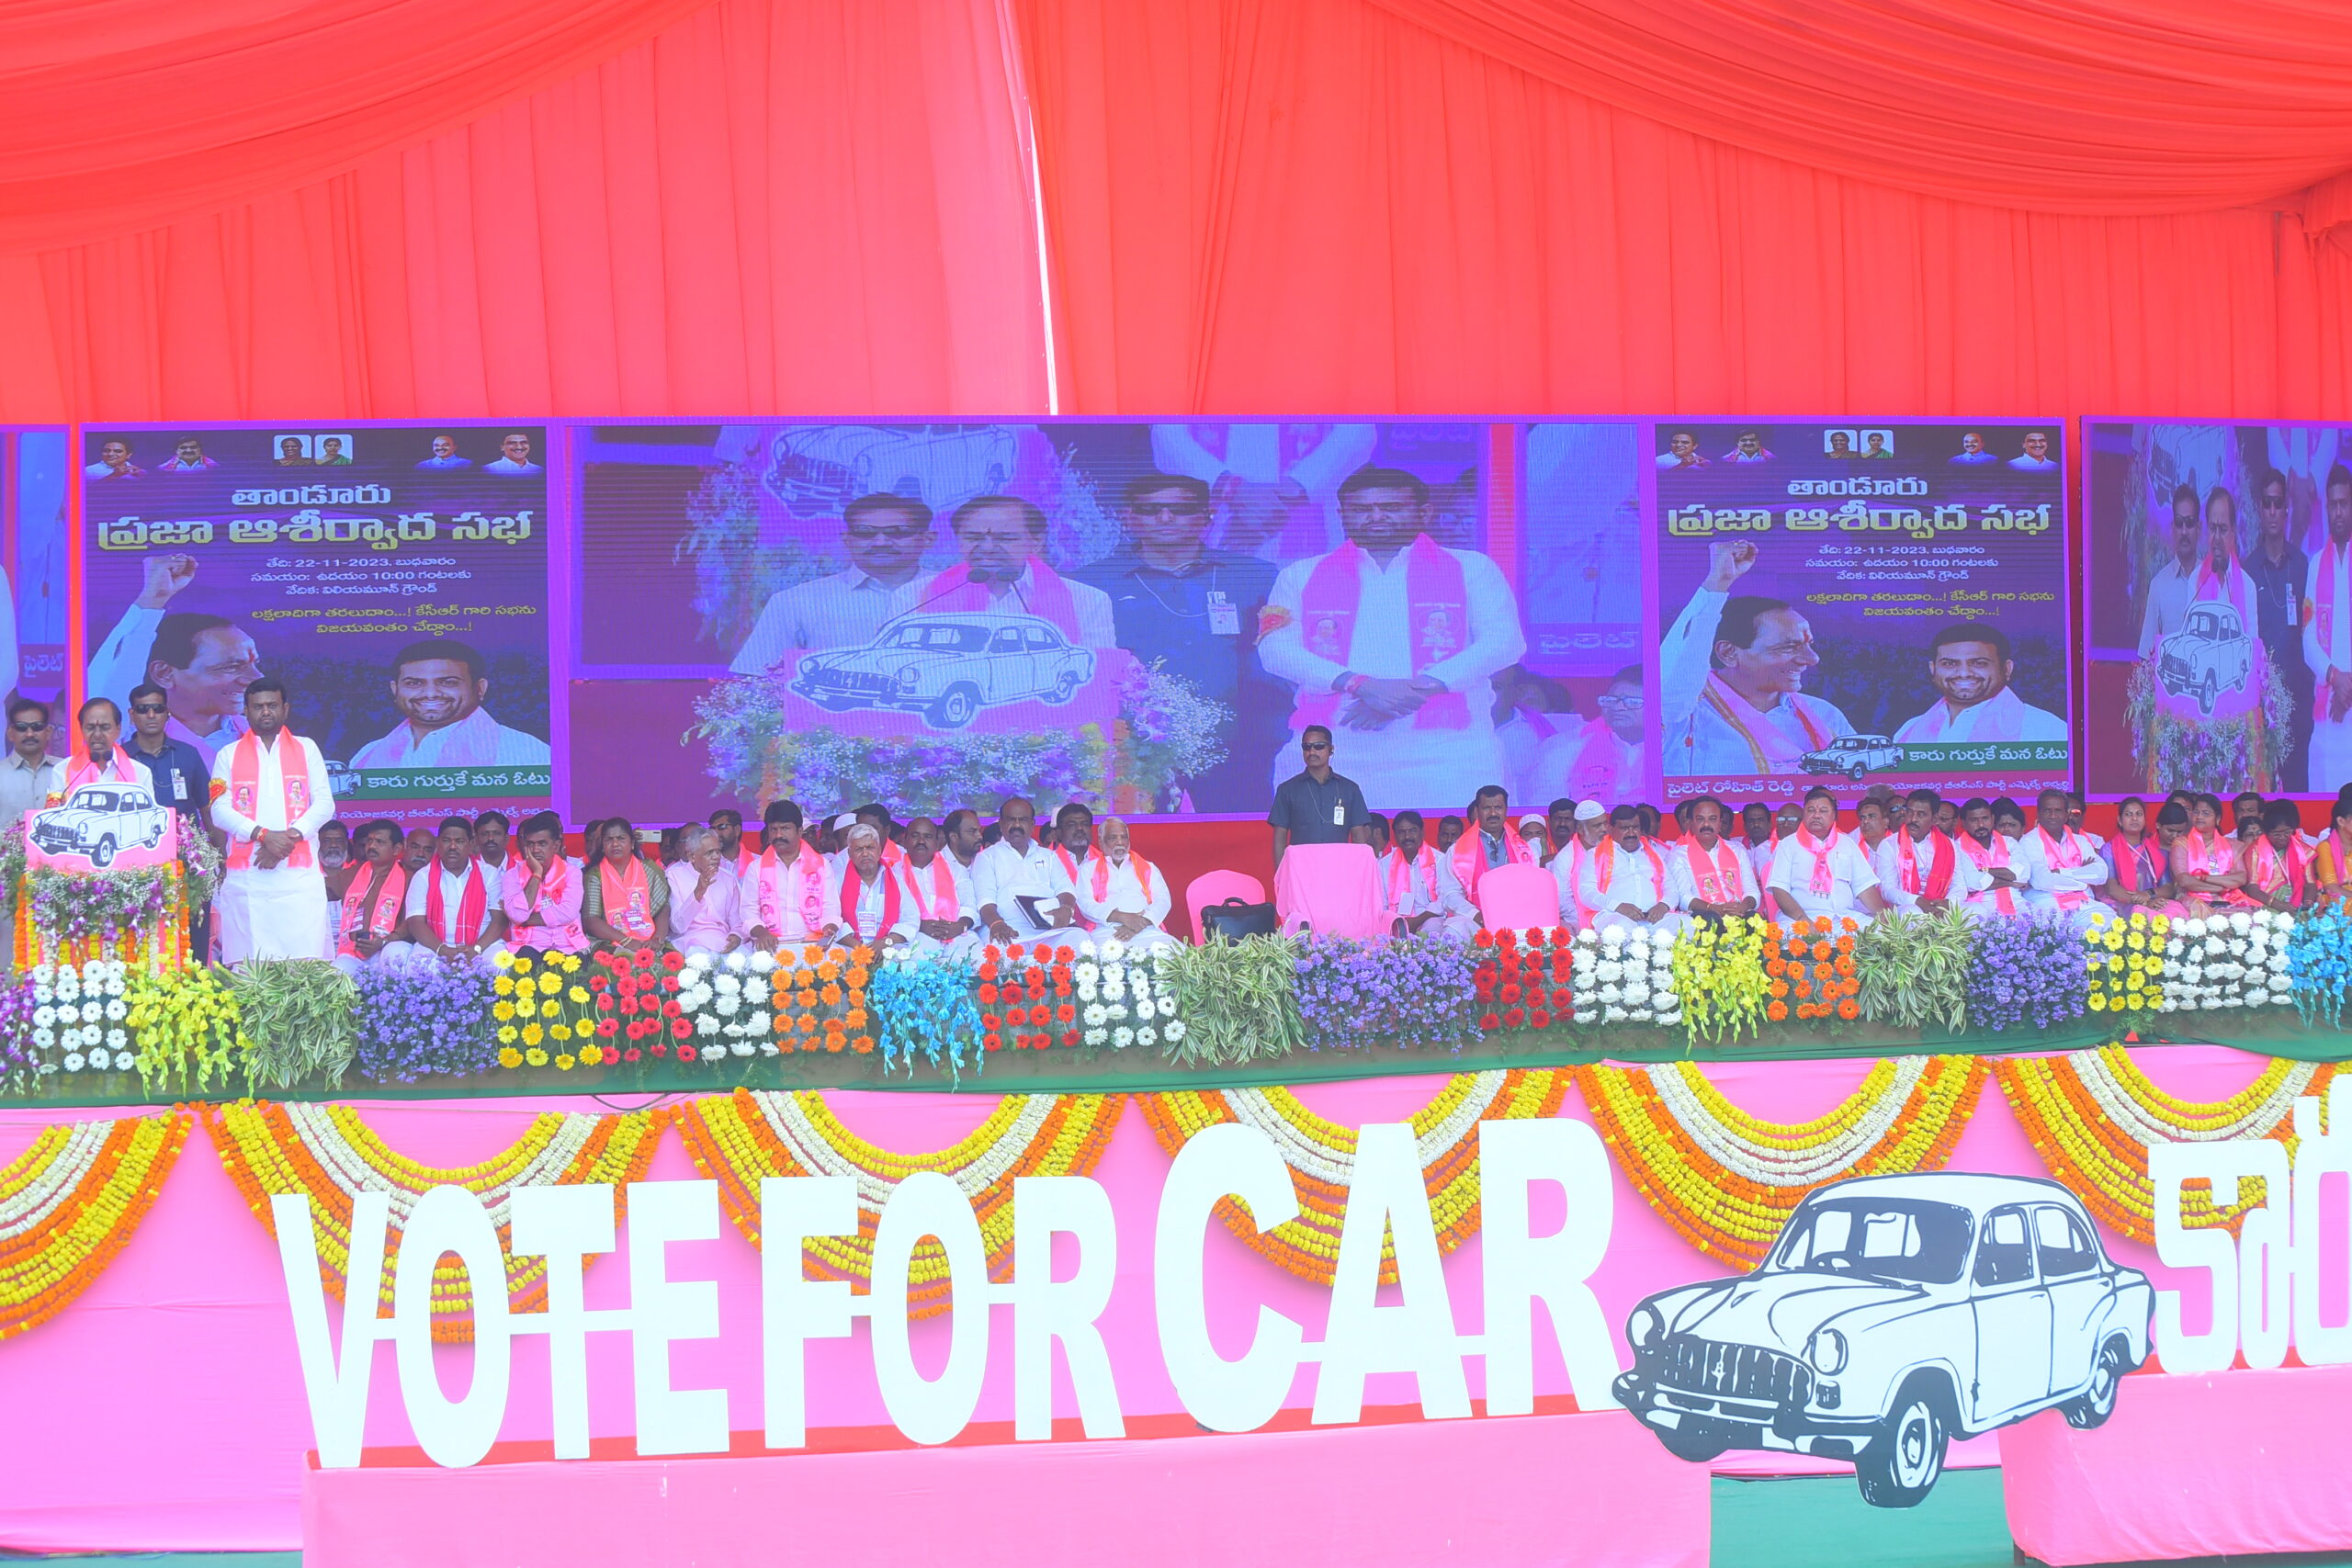 Brs Party President Kcr Participating In Praja Ashirvada Sabha At Tandur